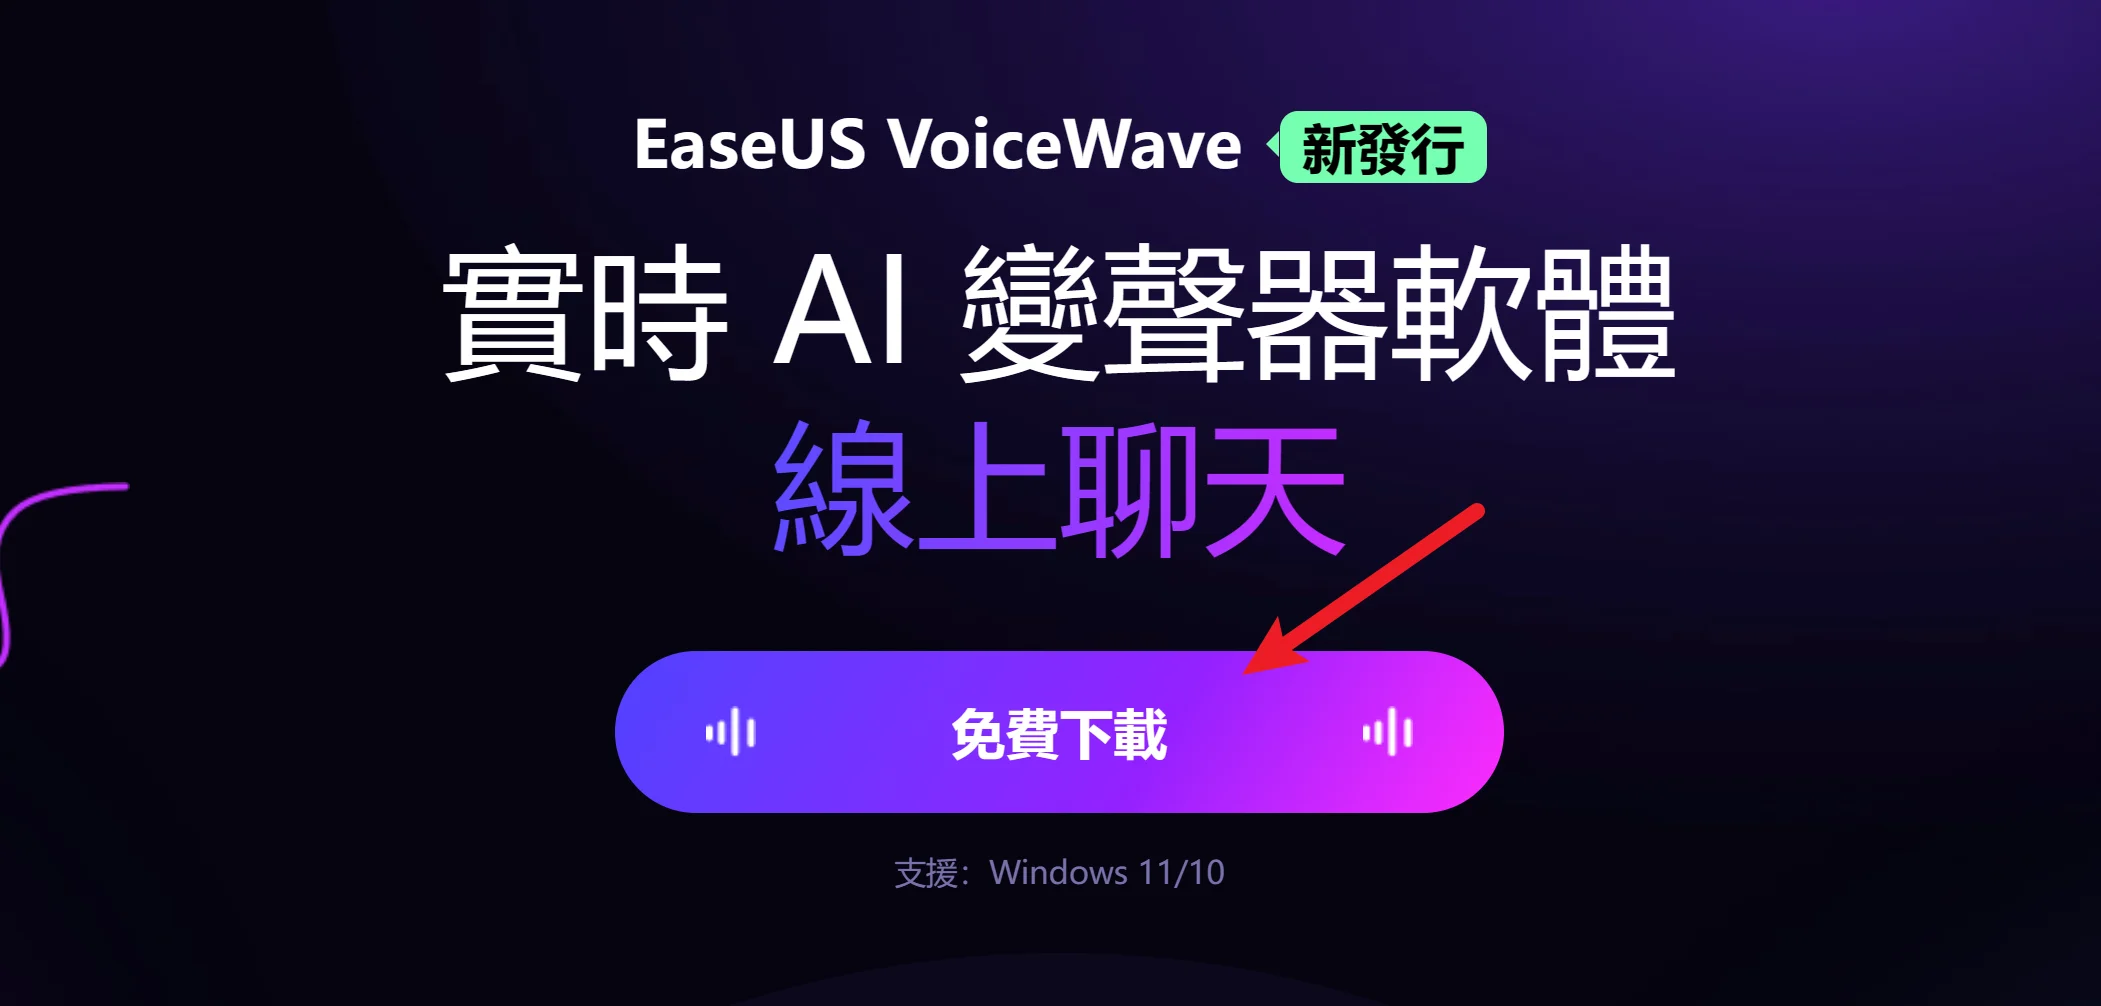 EaseUS VoiceWave 及時 AI 變聲器，支援超過百種聲音輕鬆換 9